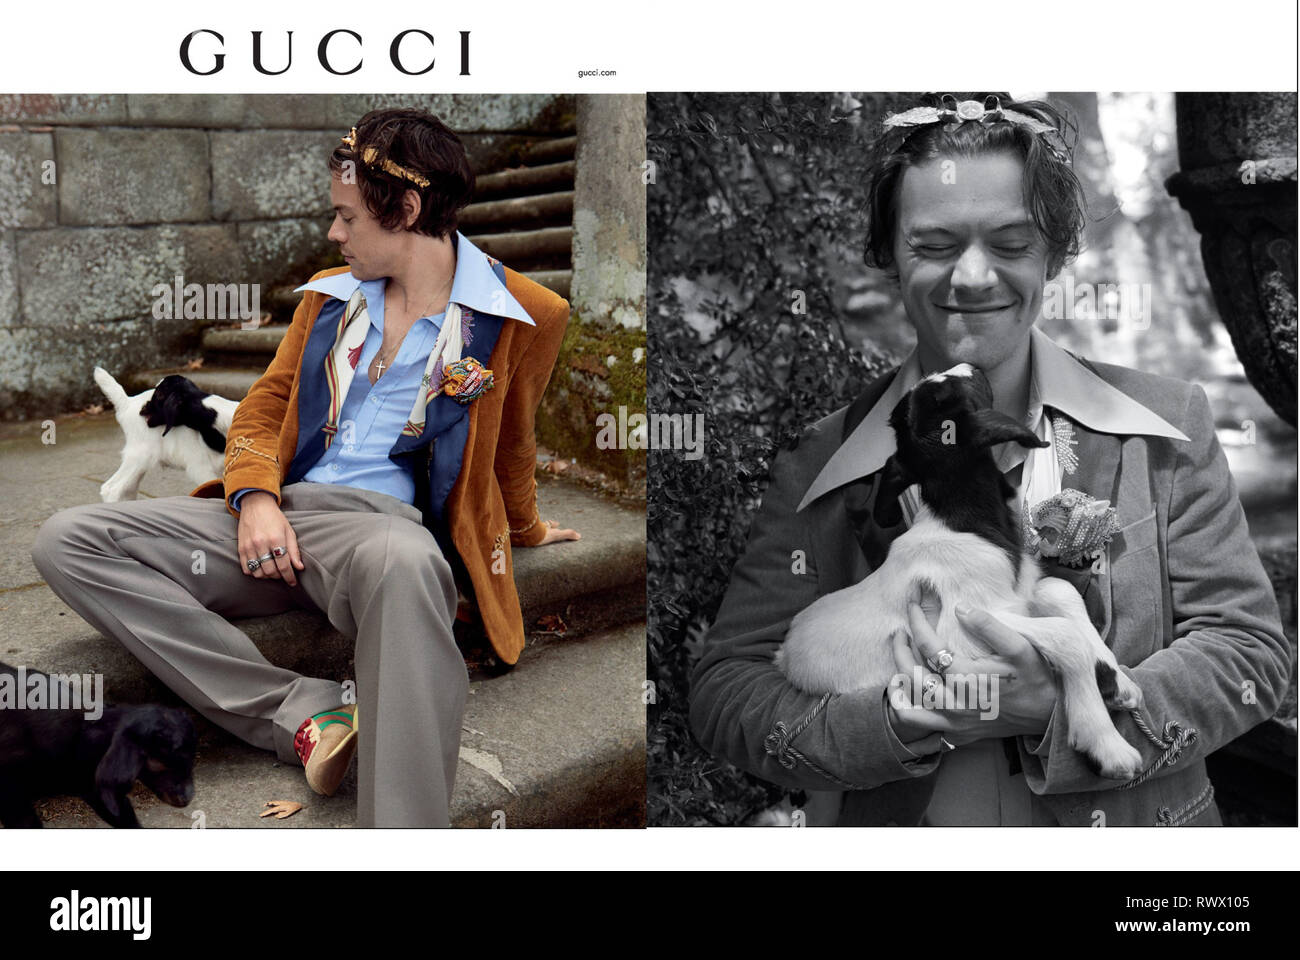 2010s UK Gucci Magazine Advert Stock Photo